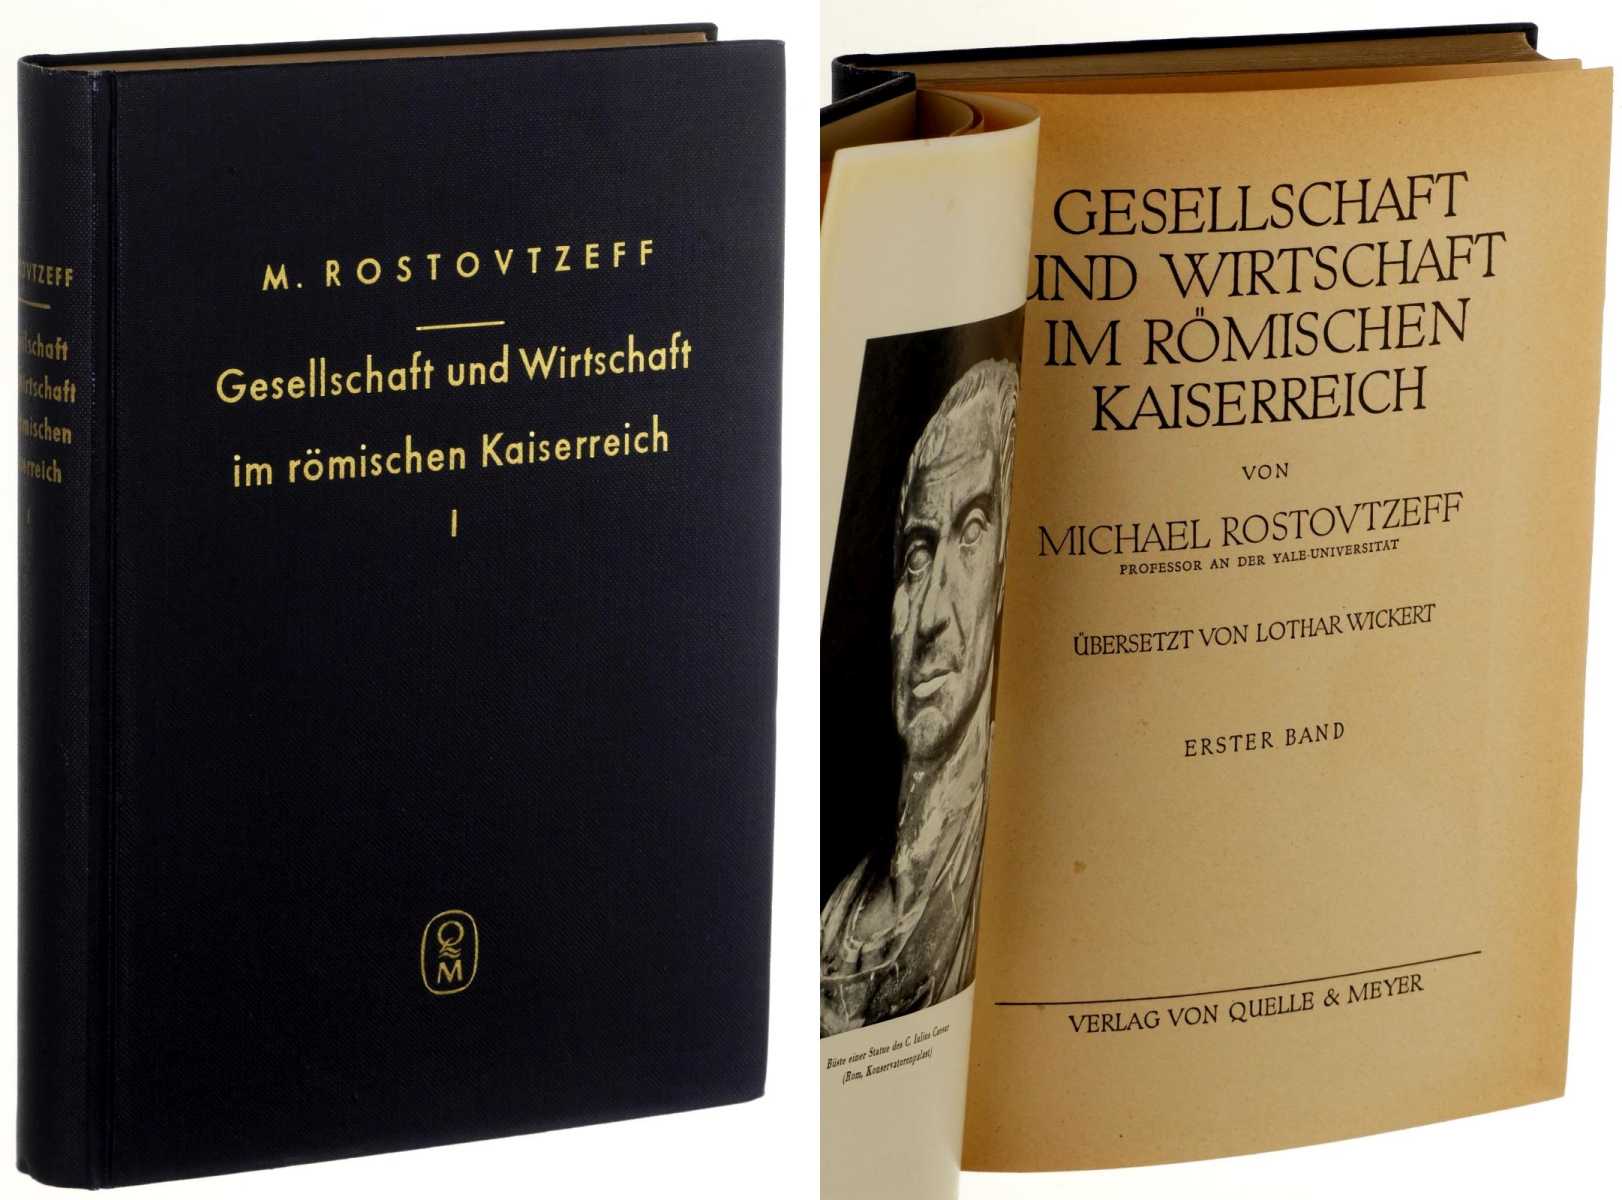 Rostovtzeff, Michael:  Gesellschaft und Wirtschaft im Römischen Kaiserreich. Übers. von L. Wickert. 